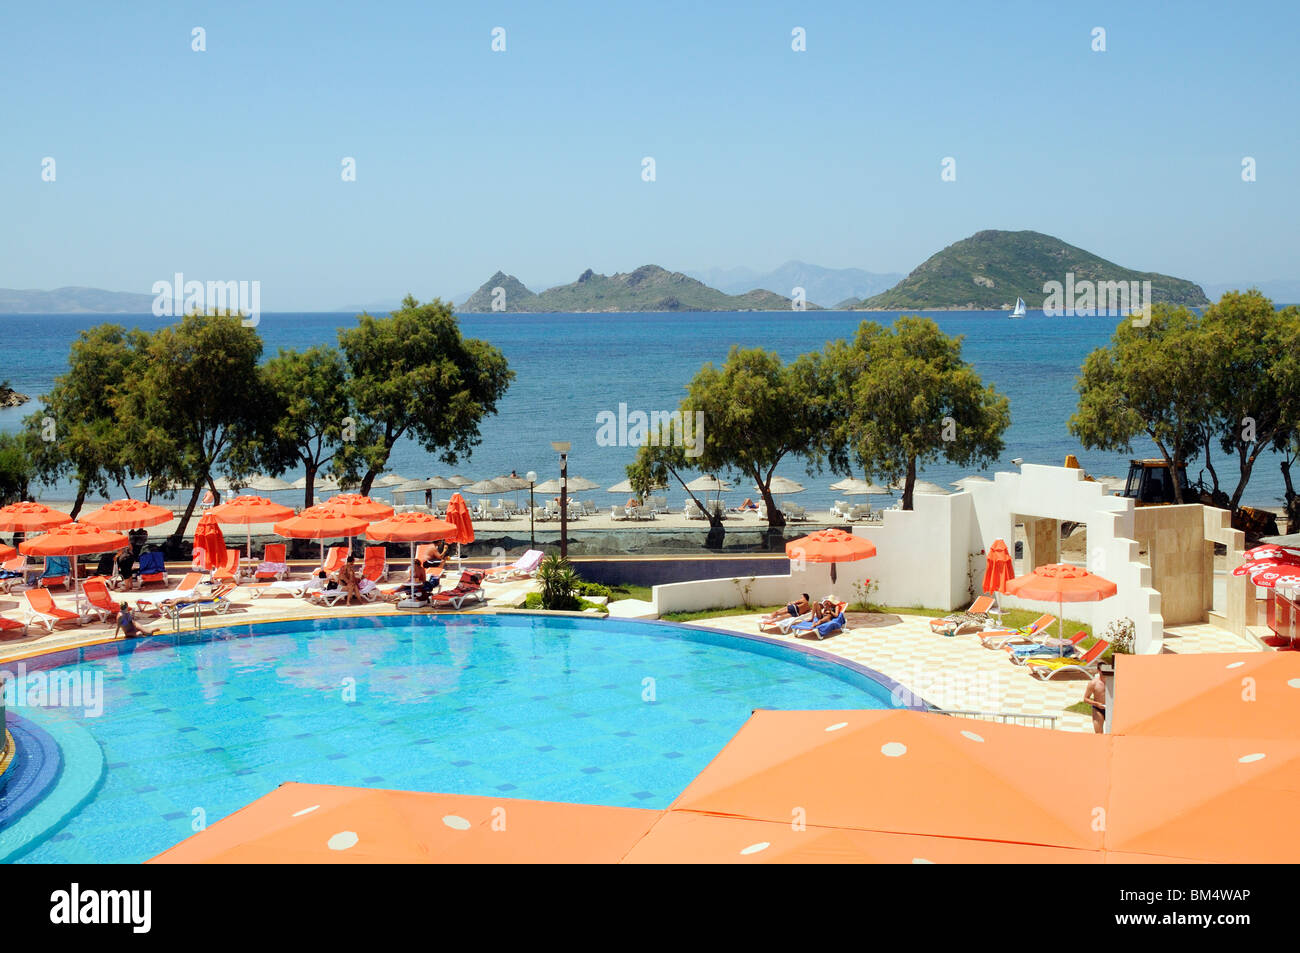 Los turistas relajarse alrededor de la piscina del hotel en la ciudad balnearia de Turgutreis cerca de Bodrum Turquía Foto de stock